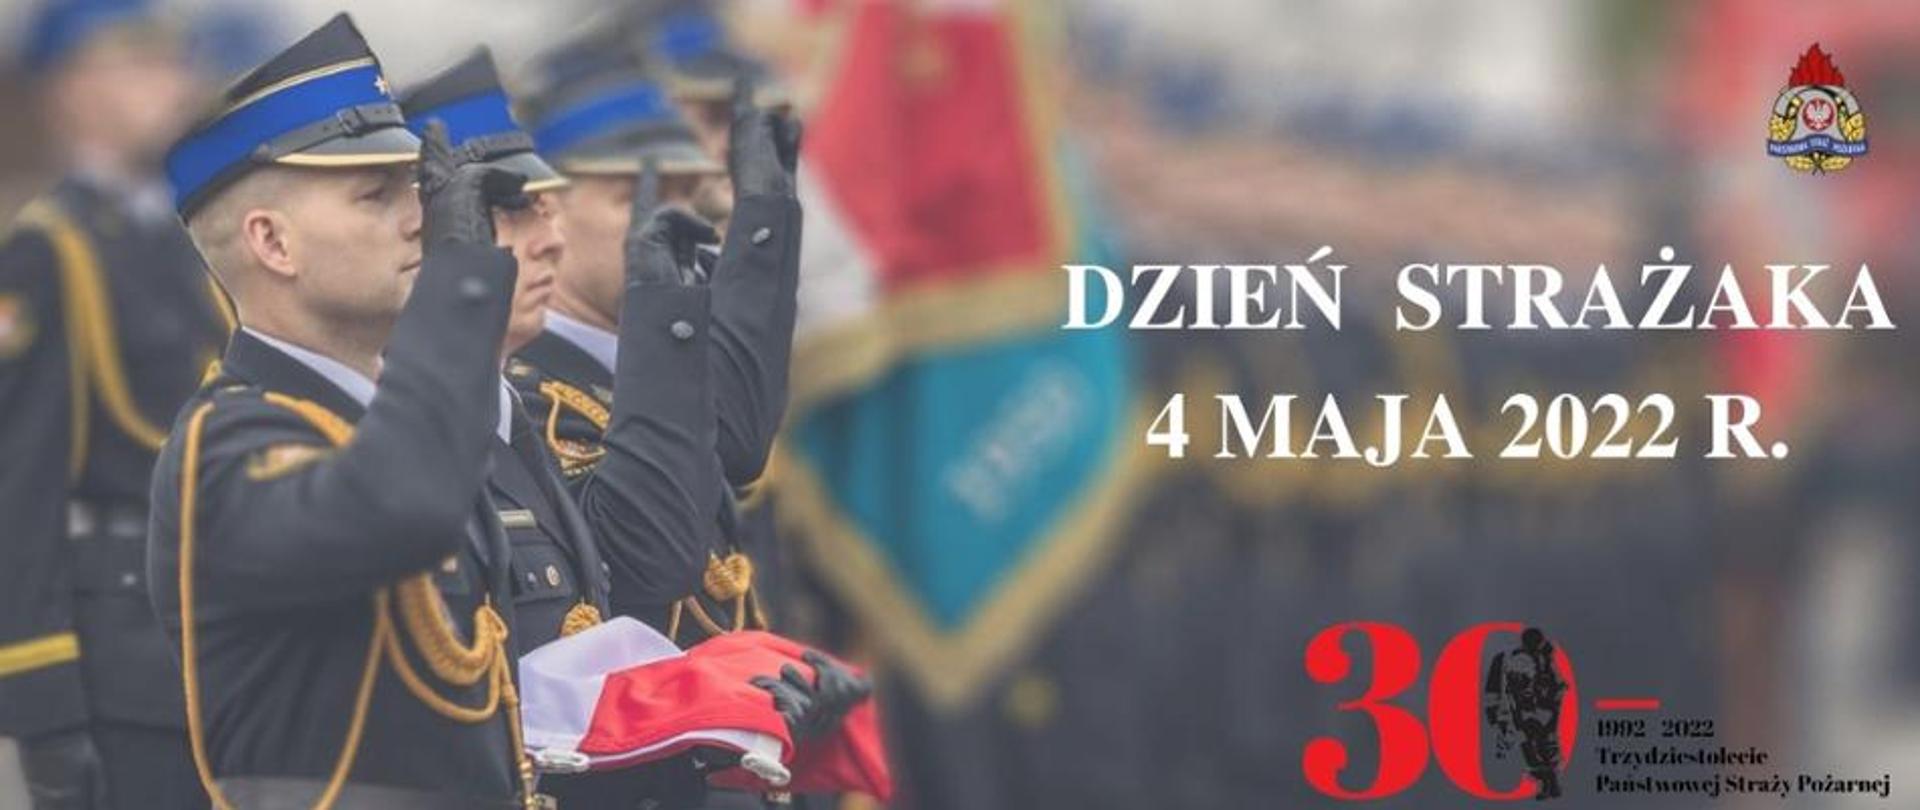 Trzech strażaków z pocztu flagowego salutuje. Napis dzień Strażaka 4 maja 2022 r.